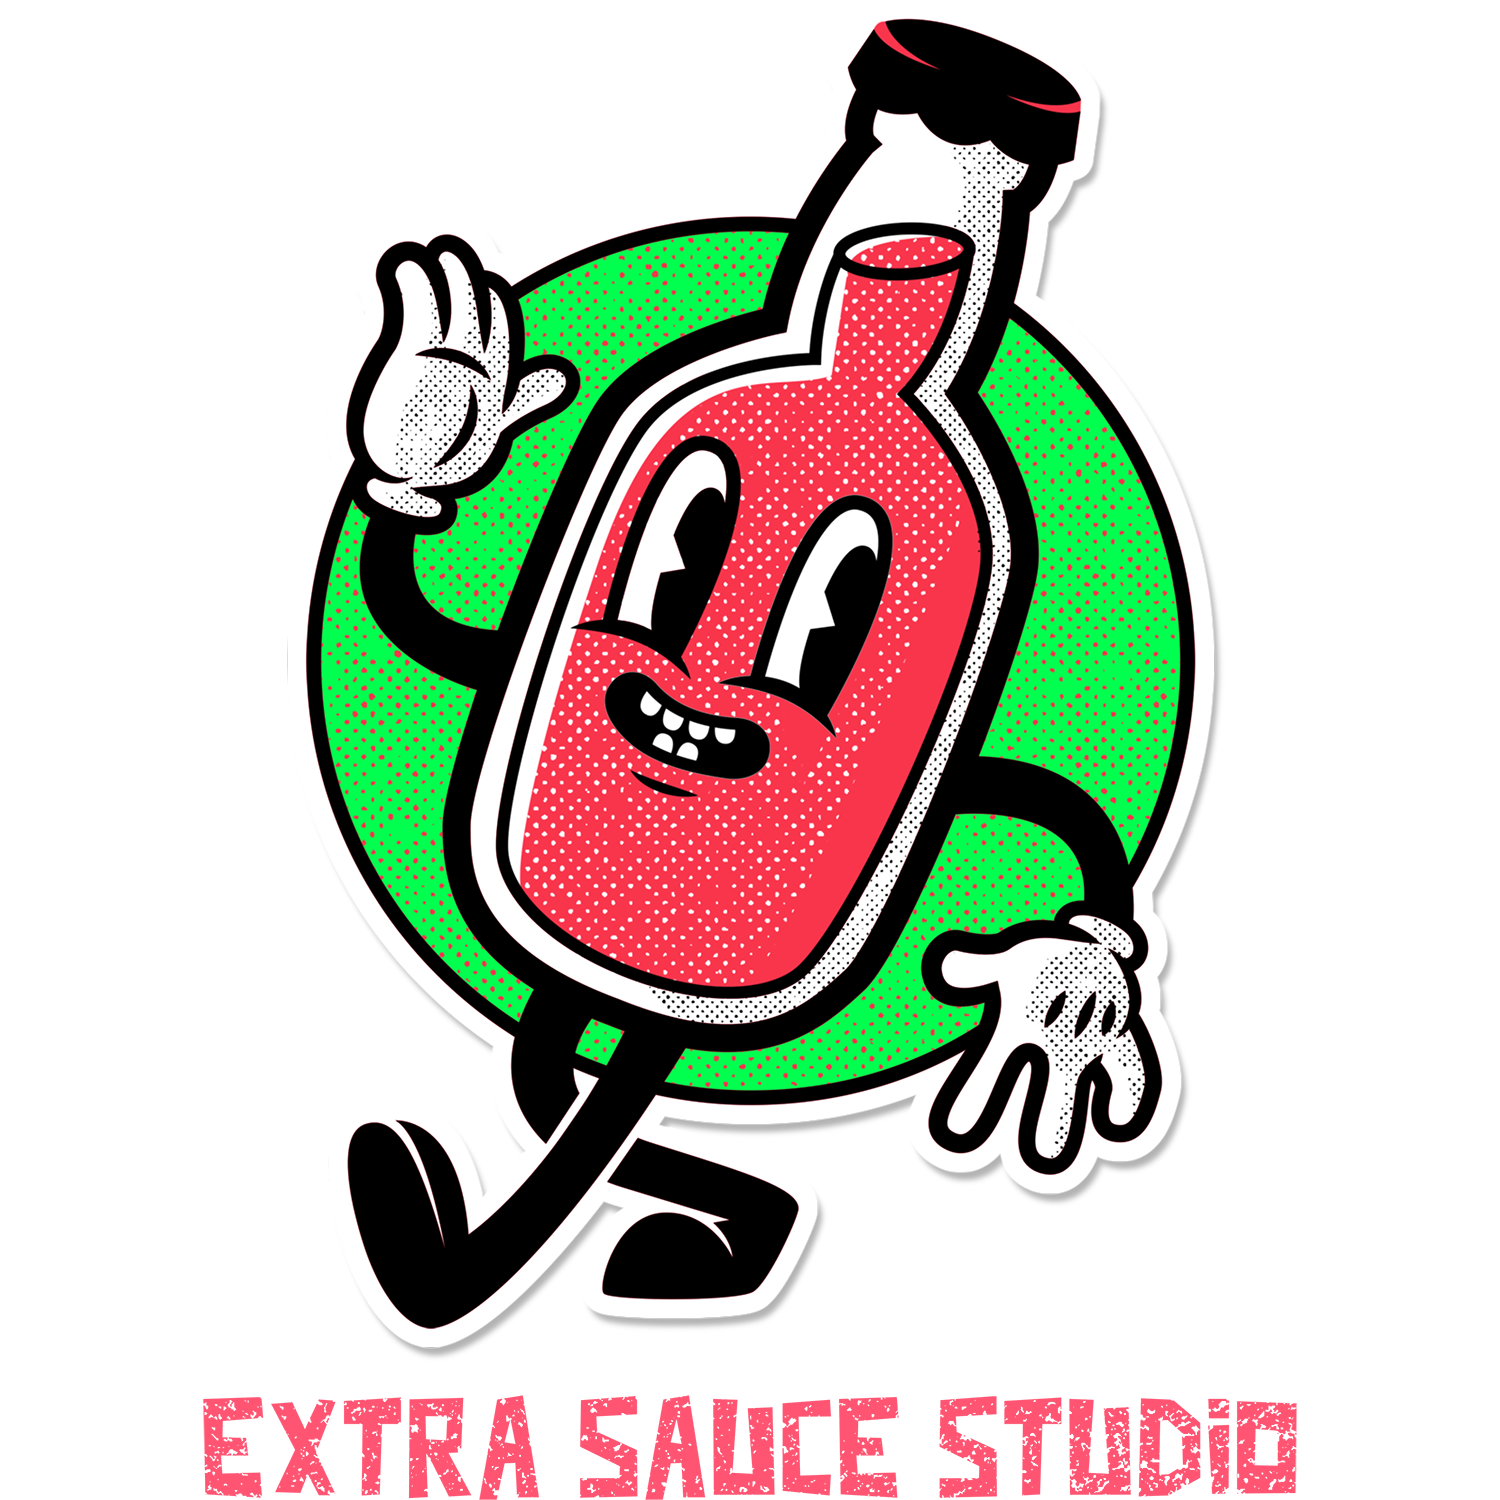 Extra Sauce Studio